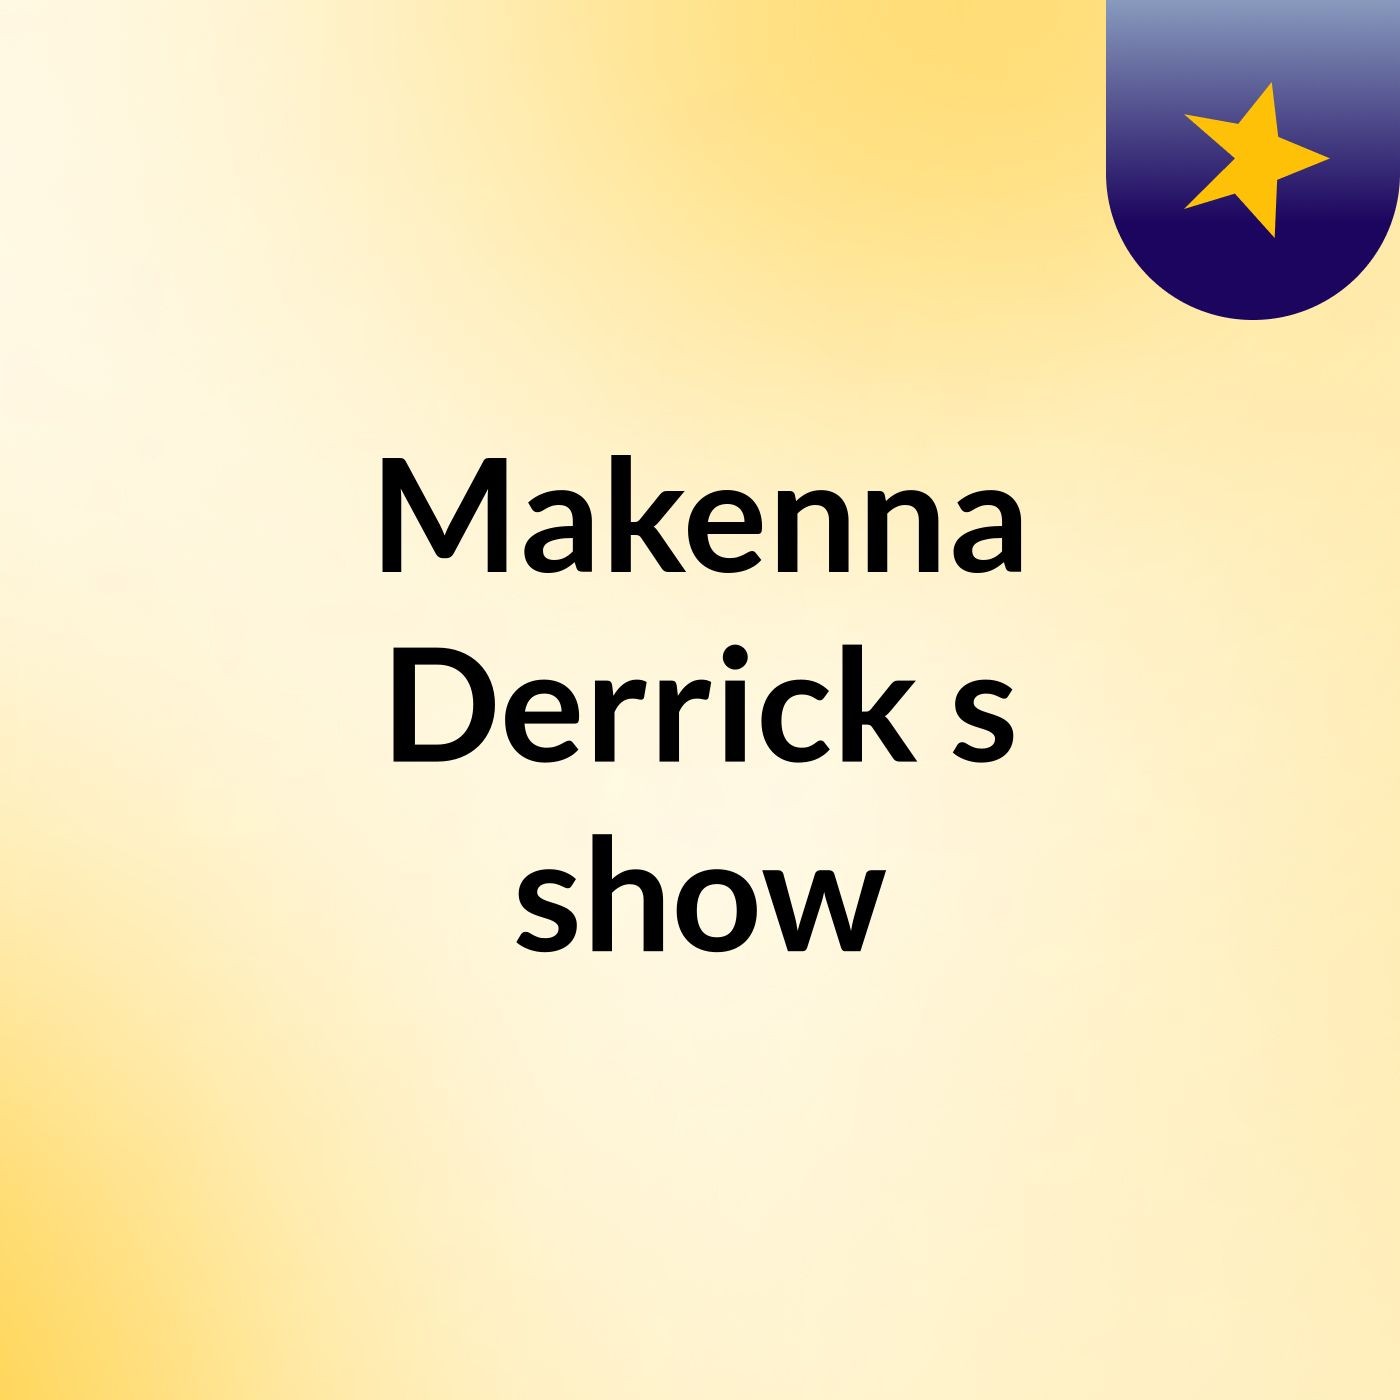 Makenna Derrick's show